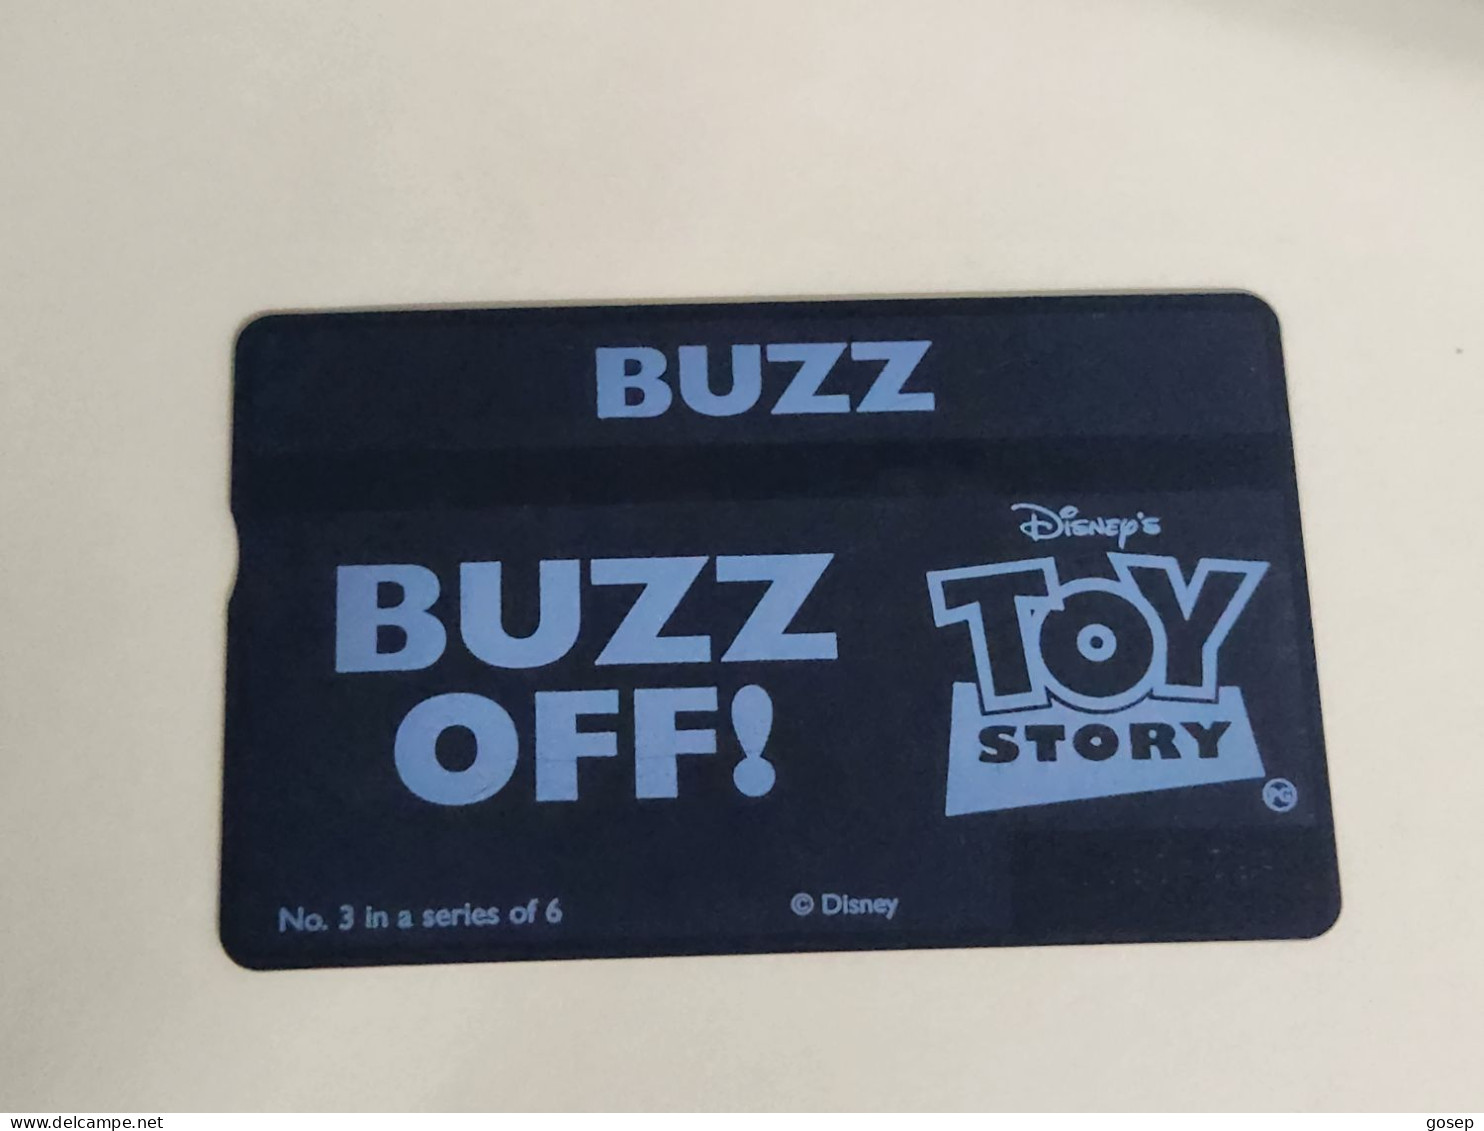 United Kingdom-(BTA150)Disney's Toy-3 BUZZ-(255)(20units)(662A36901)price Cataloge 3.00£ Used+1card Prepiad Free - BT Edición Publicitaria